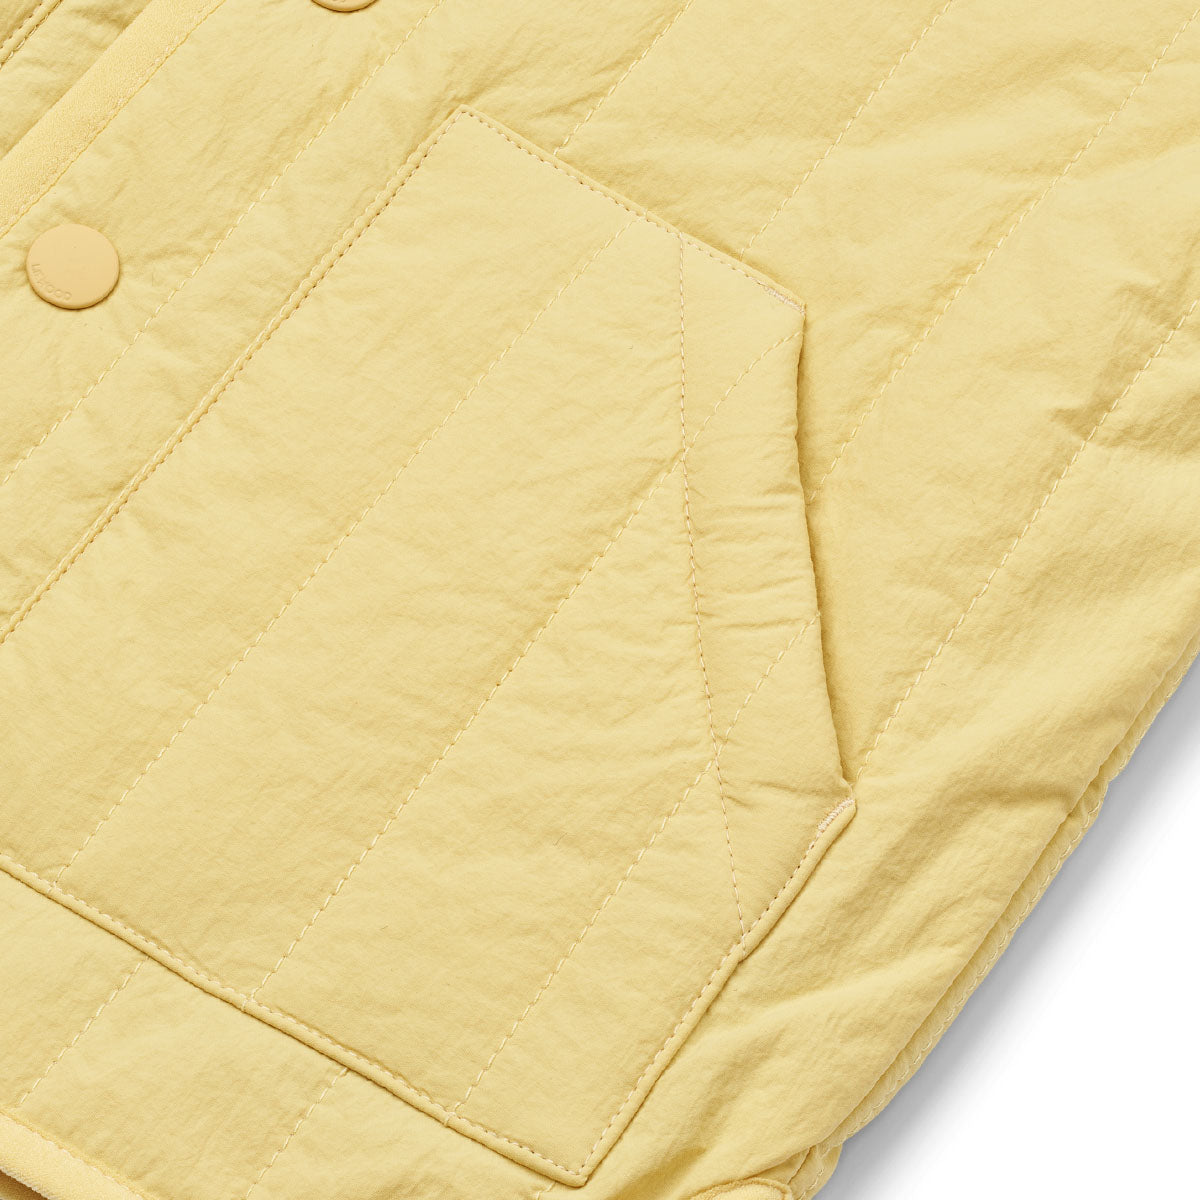 Dit superlieve Bea jasje in de kleur crispy corn is ideaal voor in de lente. Dit is namelijk een gewatteerd katoenen jasje dat heerlijk zacht aanvoelt, maar niet te warm is. Daarnaast heeft dit jasje ook een supermooie kleur! VanZus